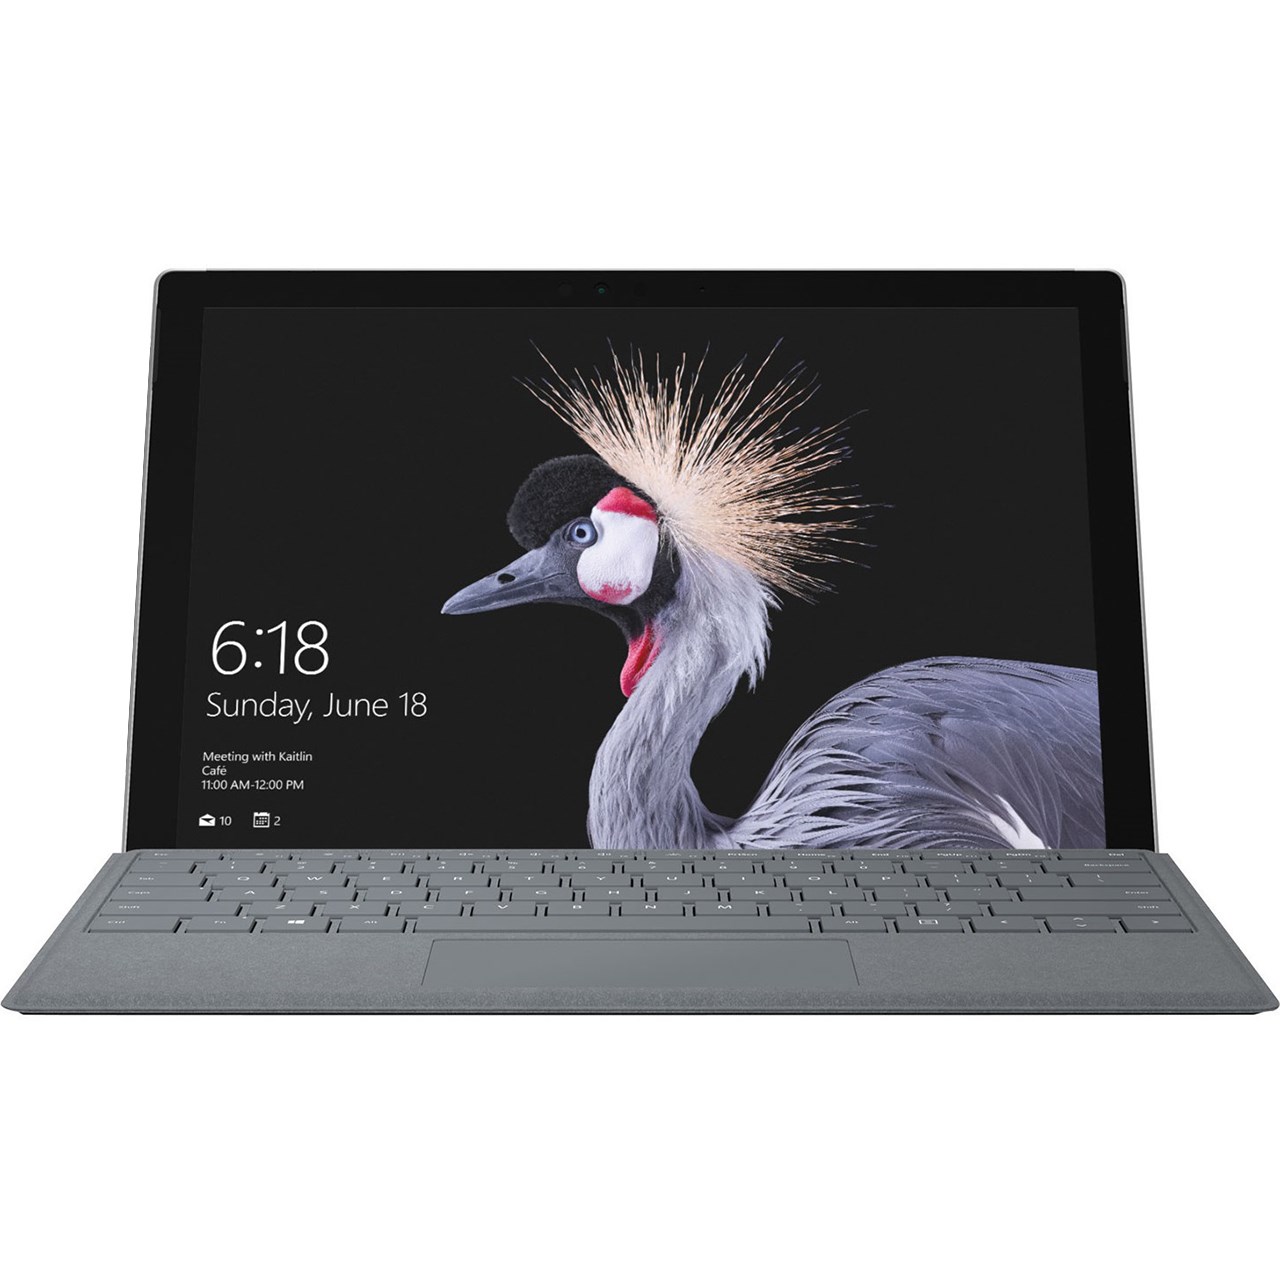 تبلت مایکروسافت مدل Surface Pro 2017 - D به همراه کیبورد سیگنیچر رنگ پلاتینیوم و کیف چرم صنوبر  - ظرفیت 256 گیگابایت